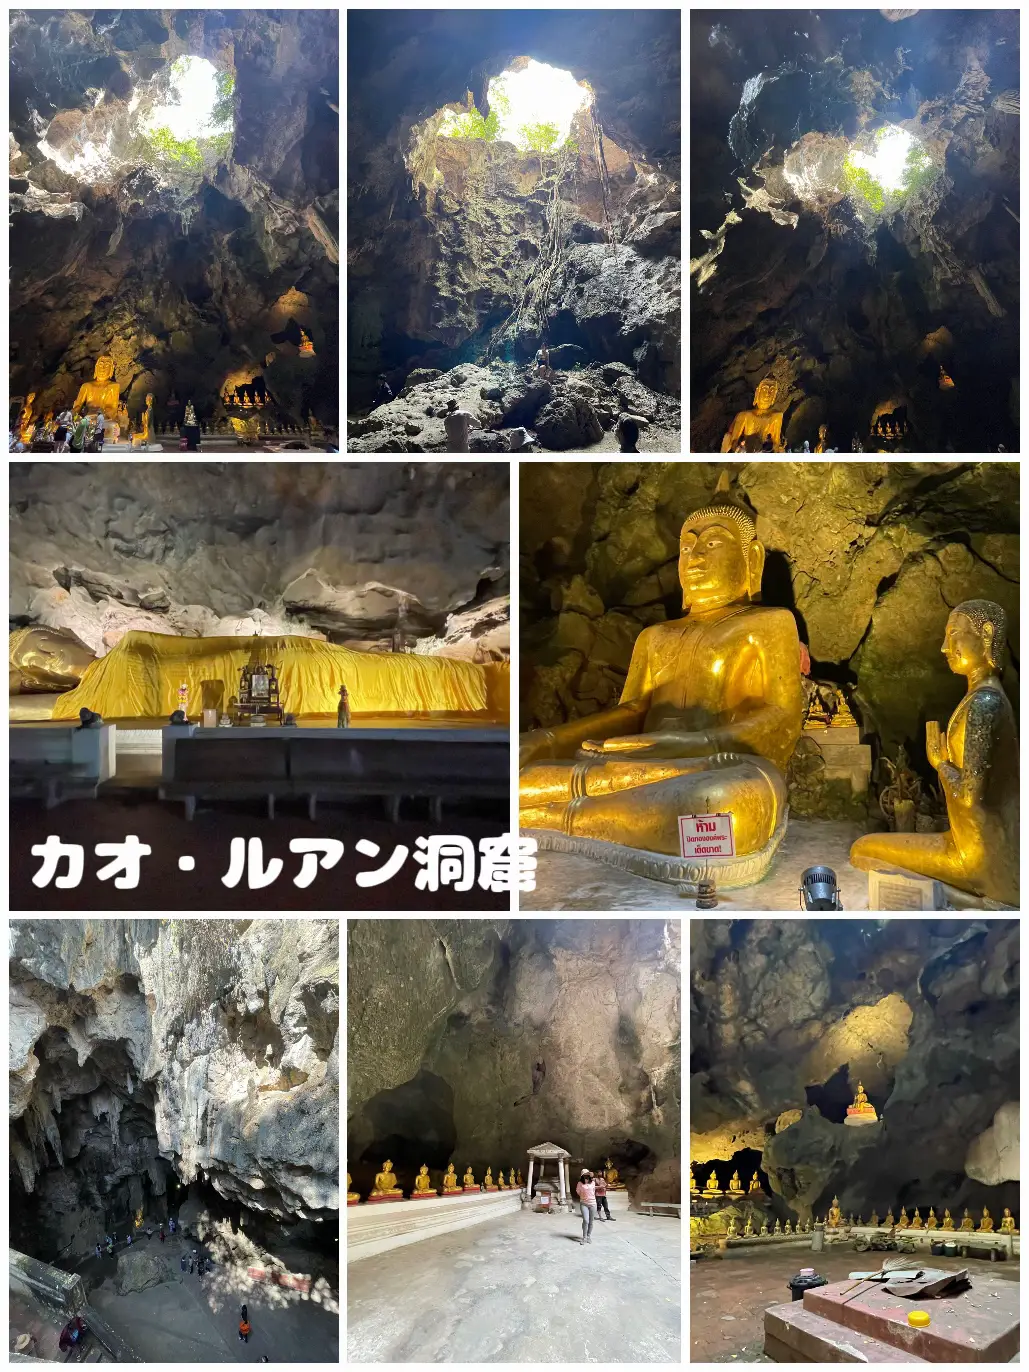 【タイ旅行6日目】神聖な観光スポットとバンコクの夜を満喫❤︎の画像 (3枚目)